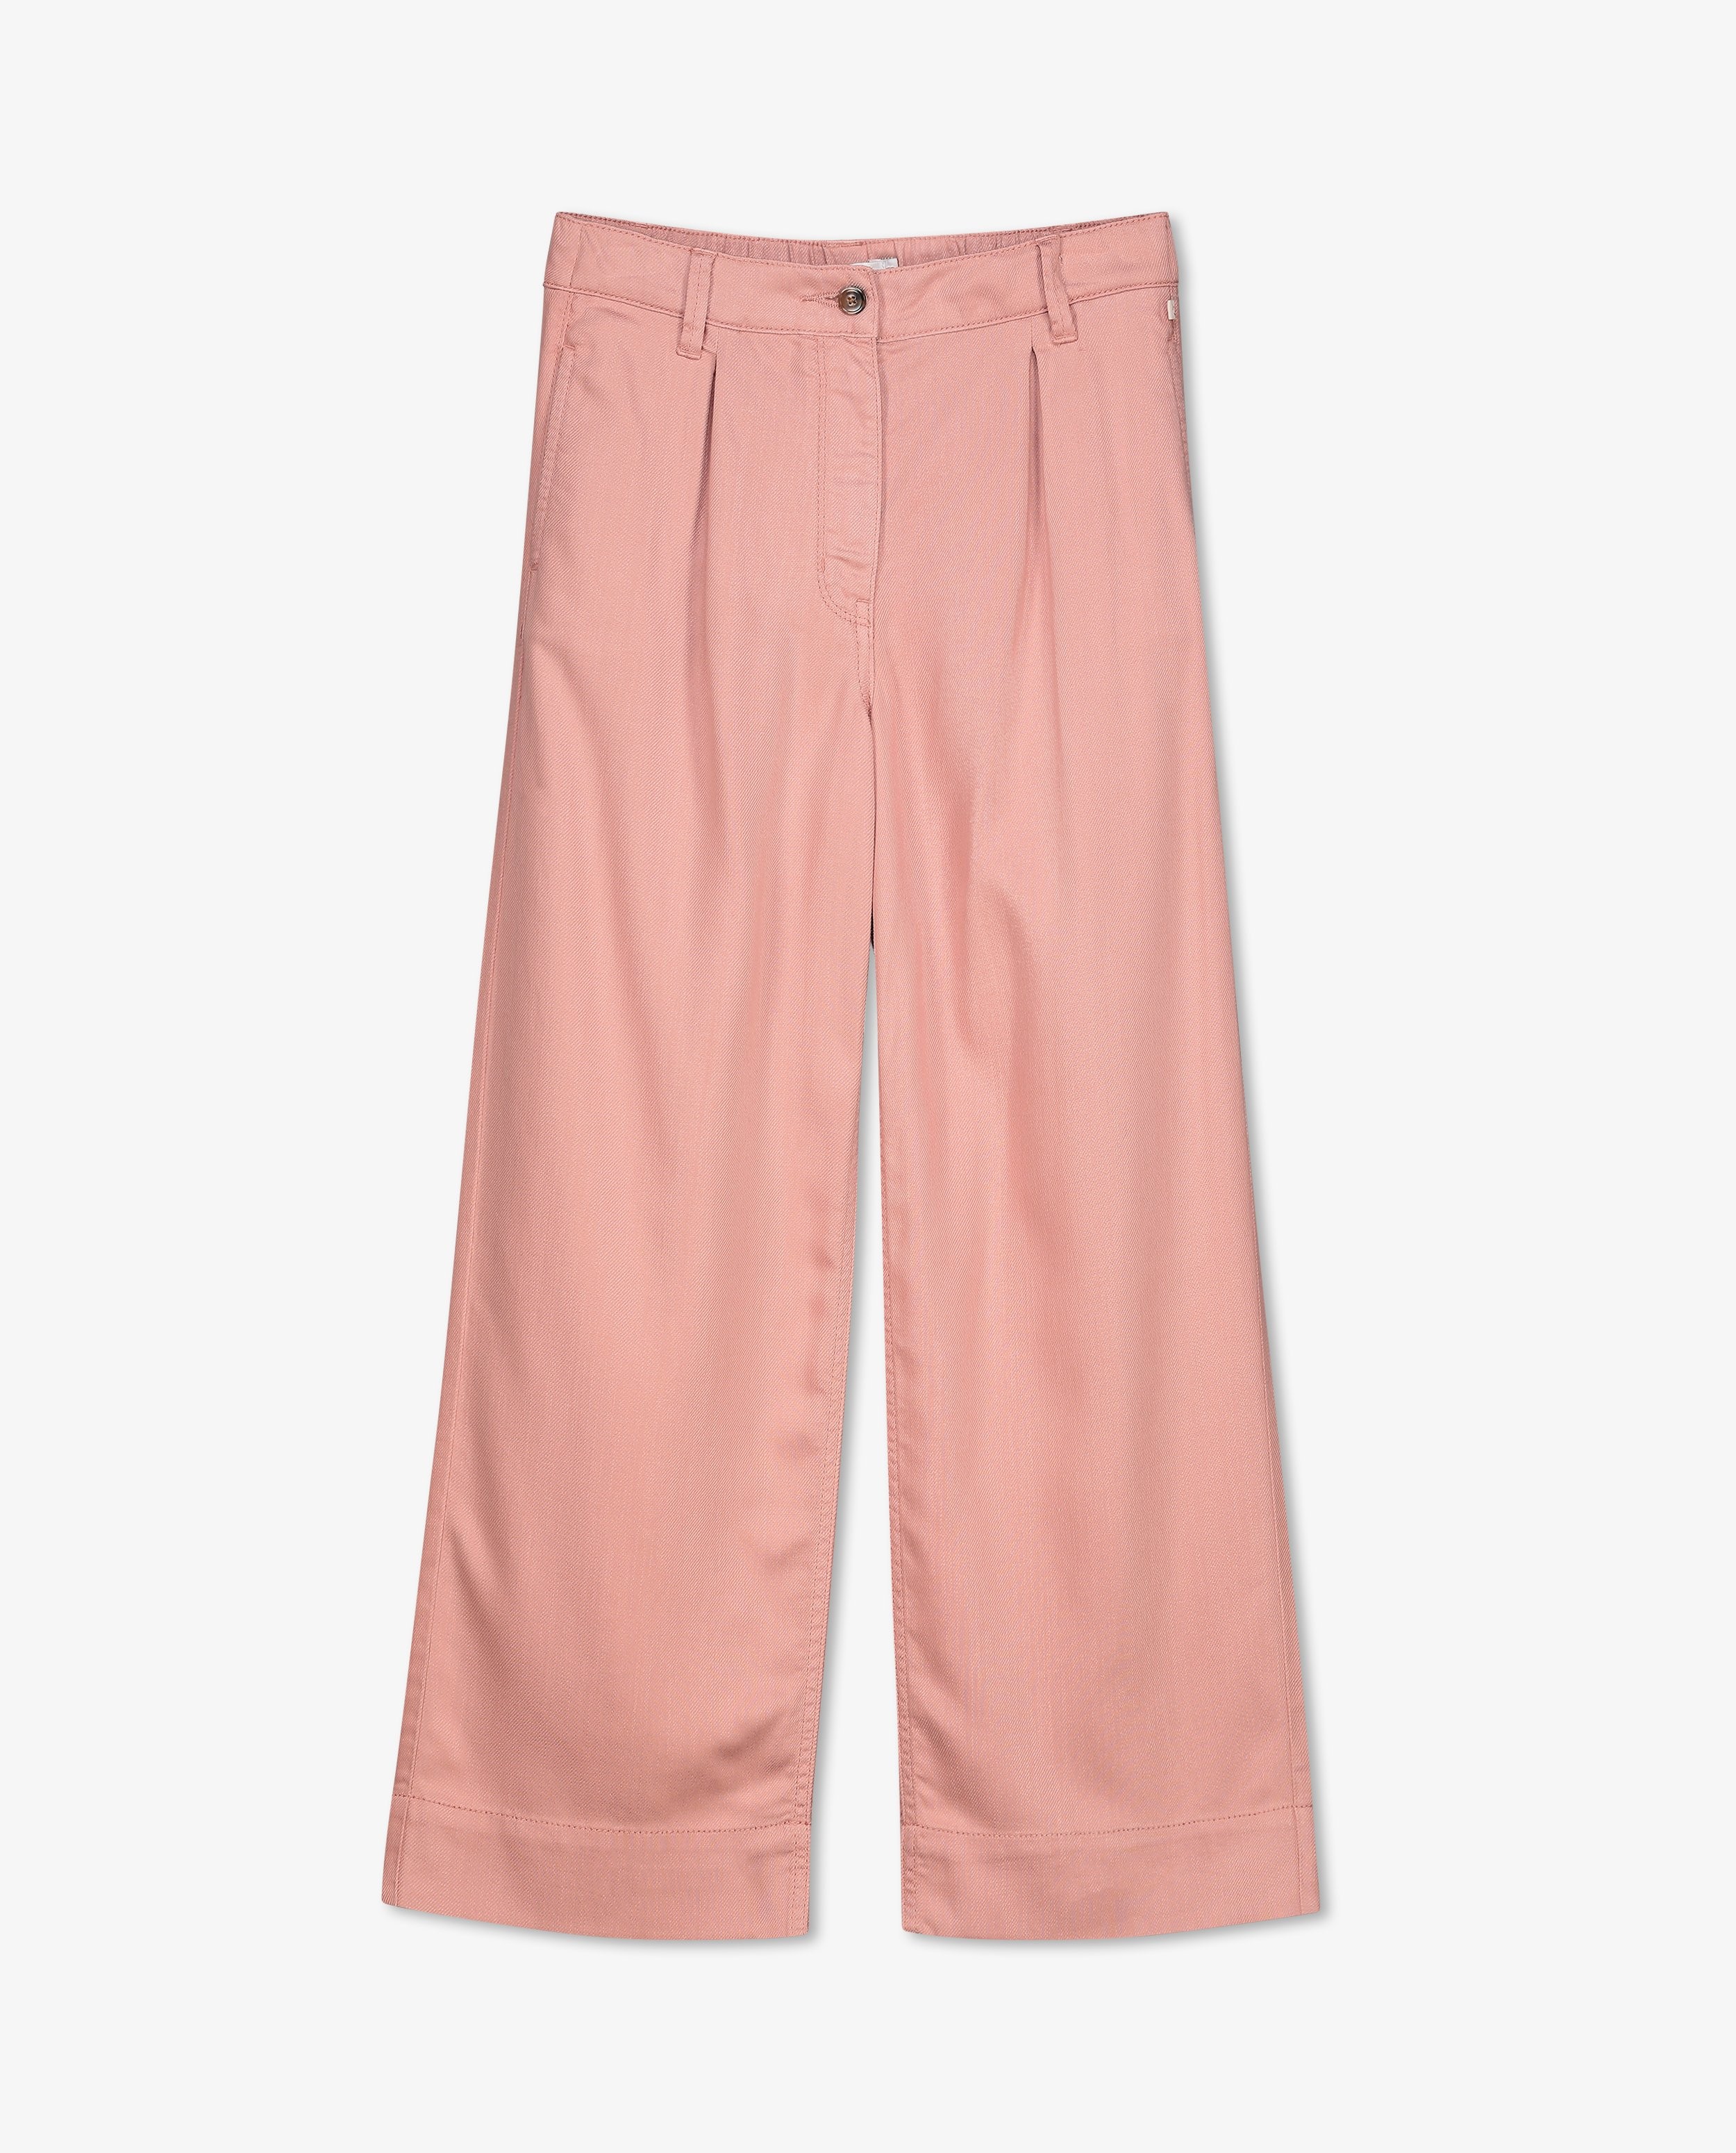 Broeken - Roze broek, flared fit